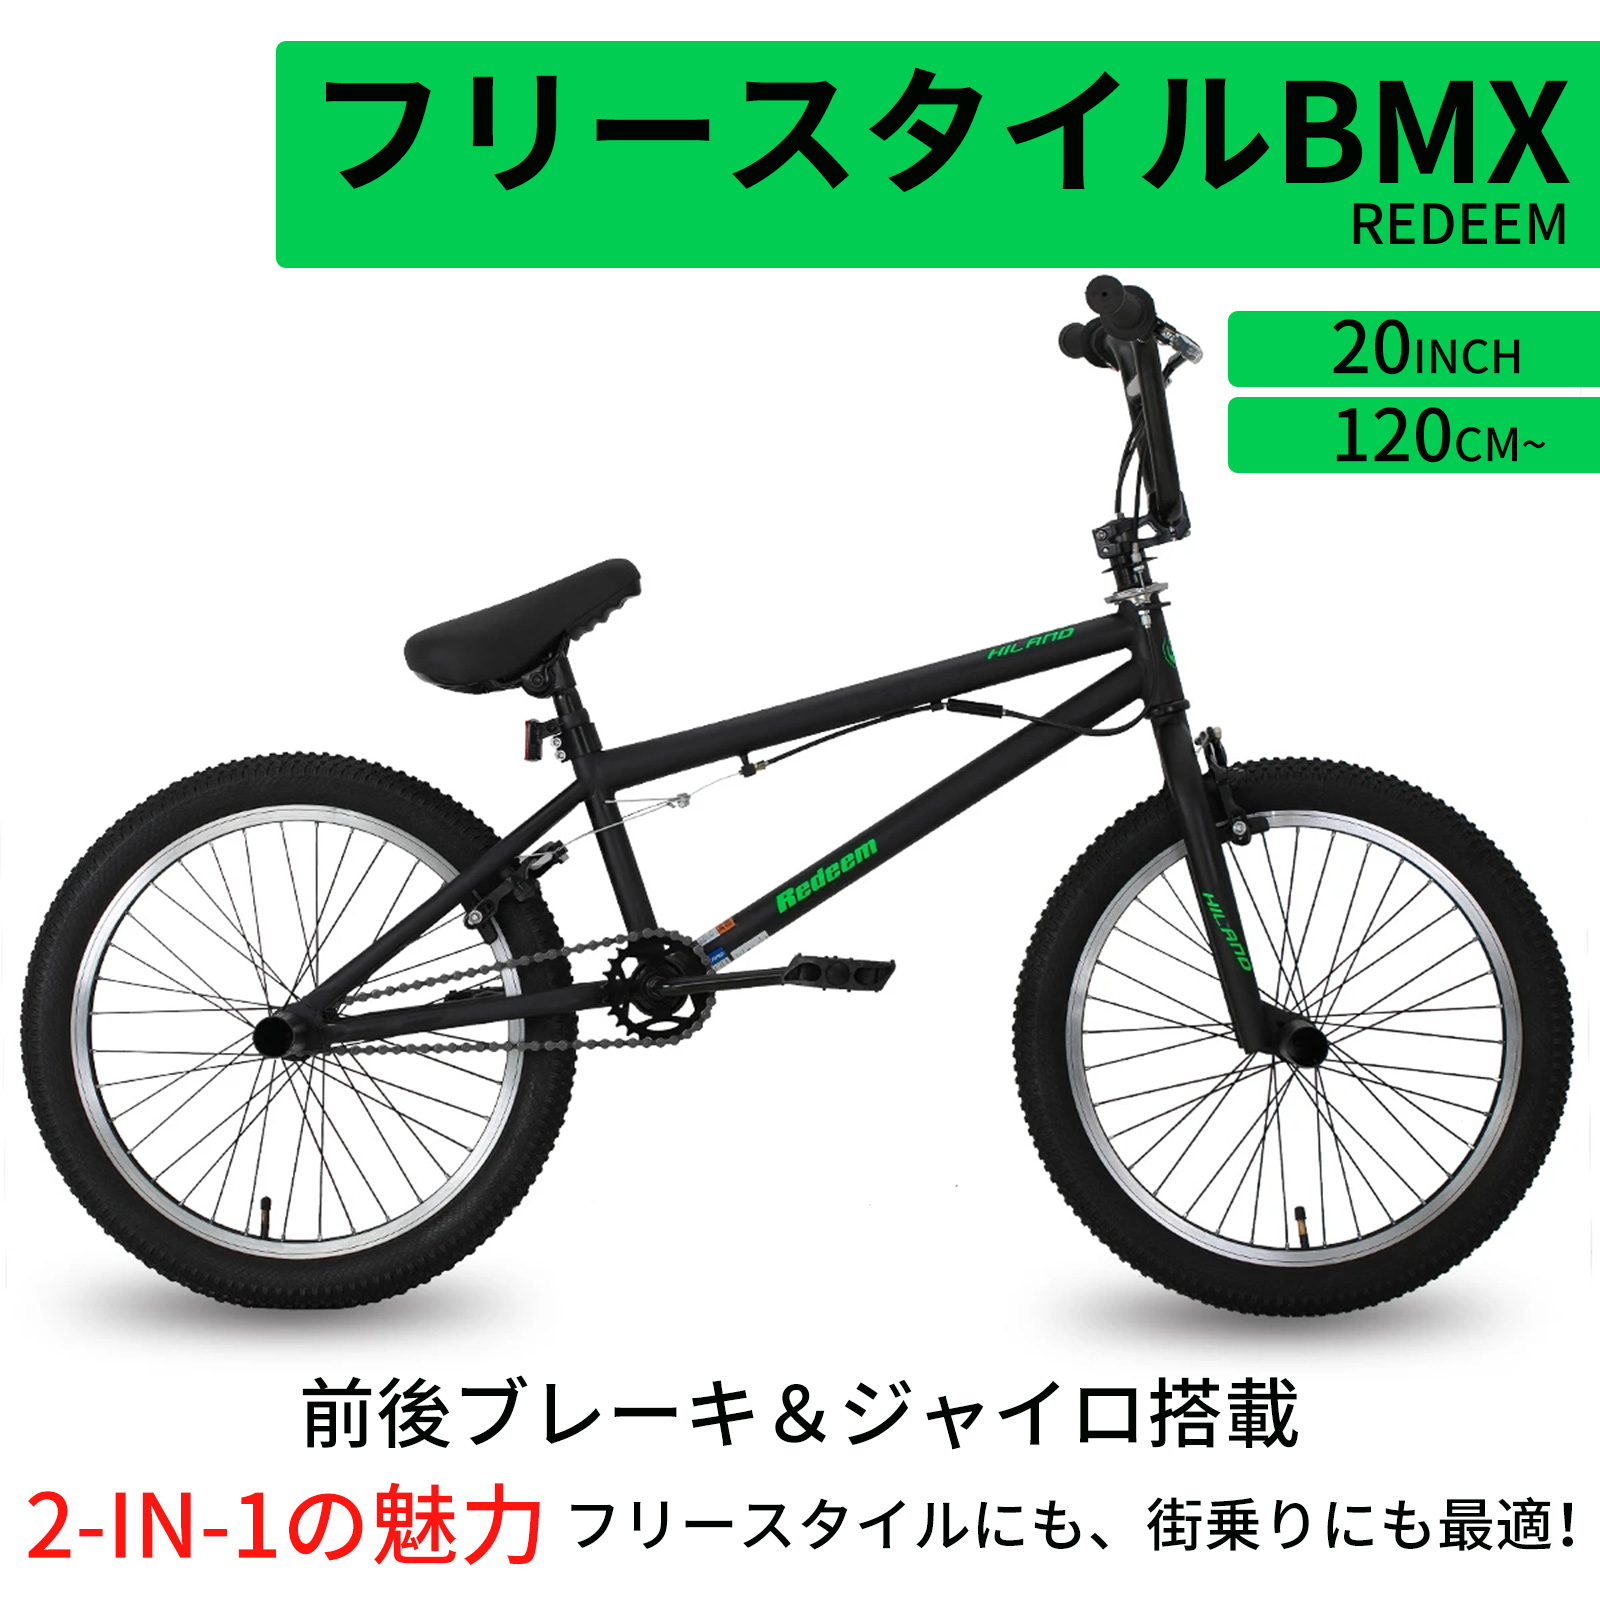 限定SALE品質保証HILAND BMXバイク 20インチ HIFR039bk ブラック 自転車本体